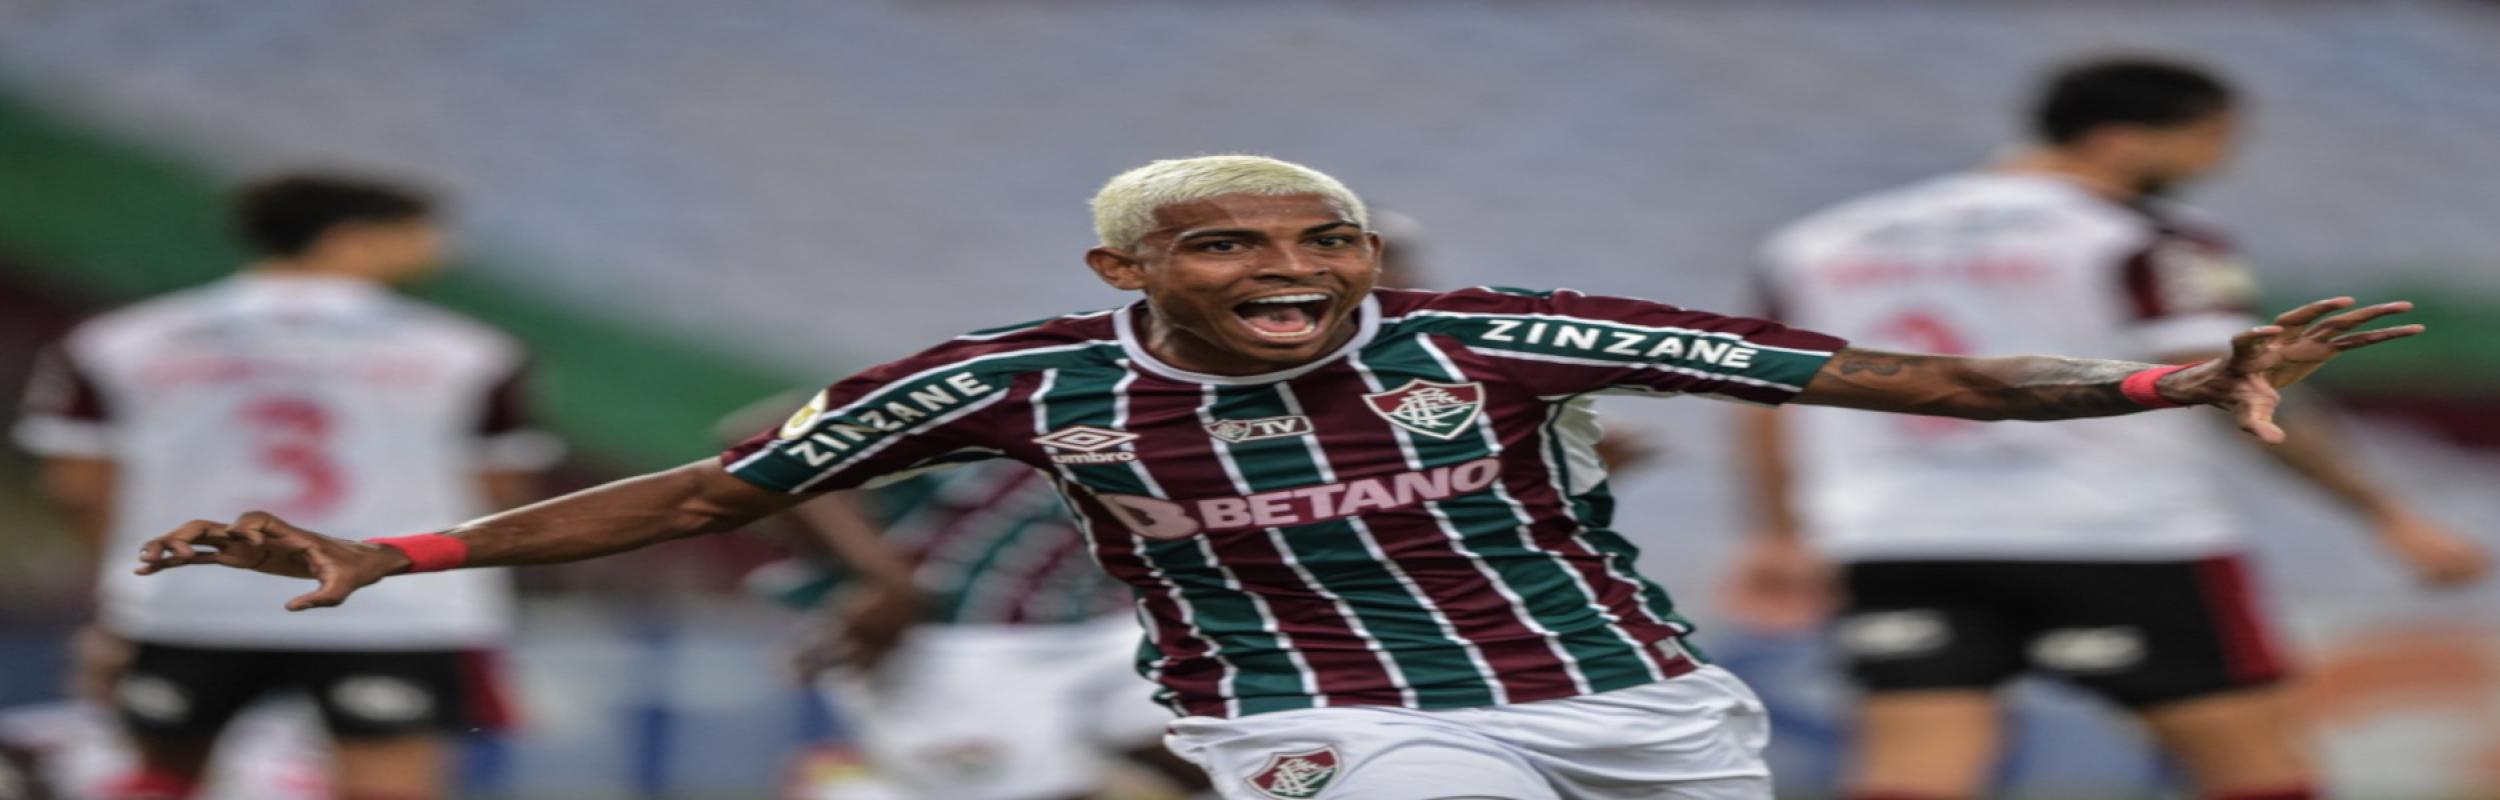 Φλουμινένσε, Fluminense